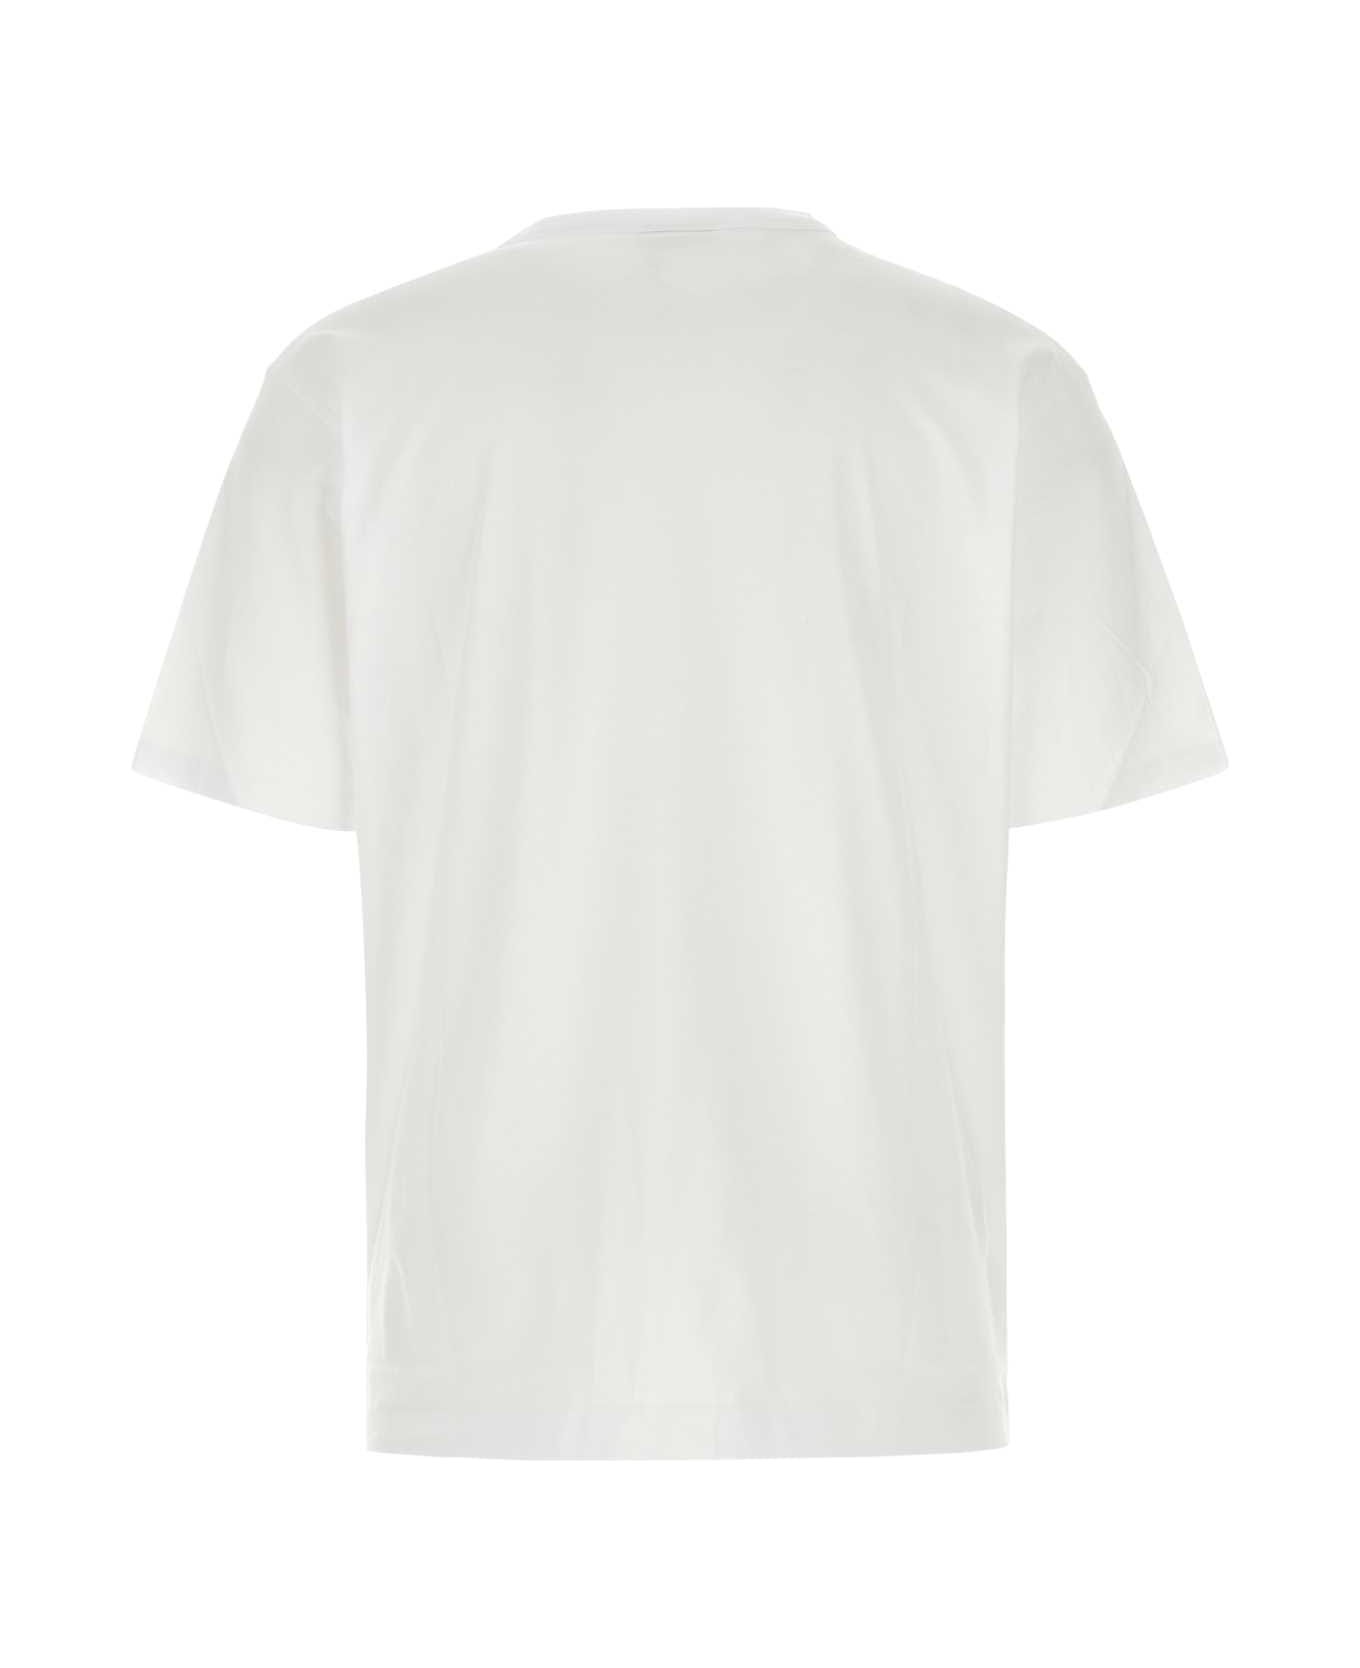 Dries Van Noten White Cotton Heer T-shirt - White